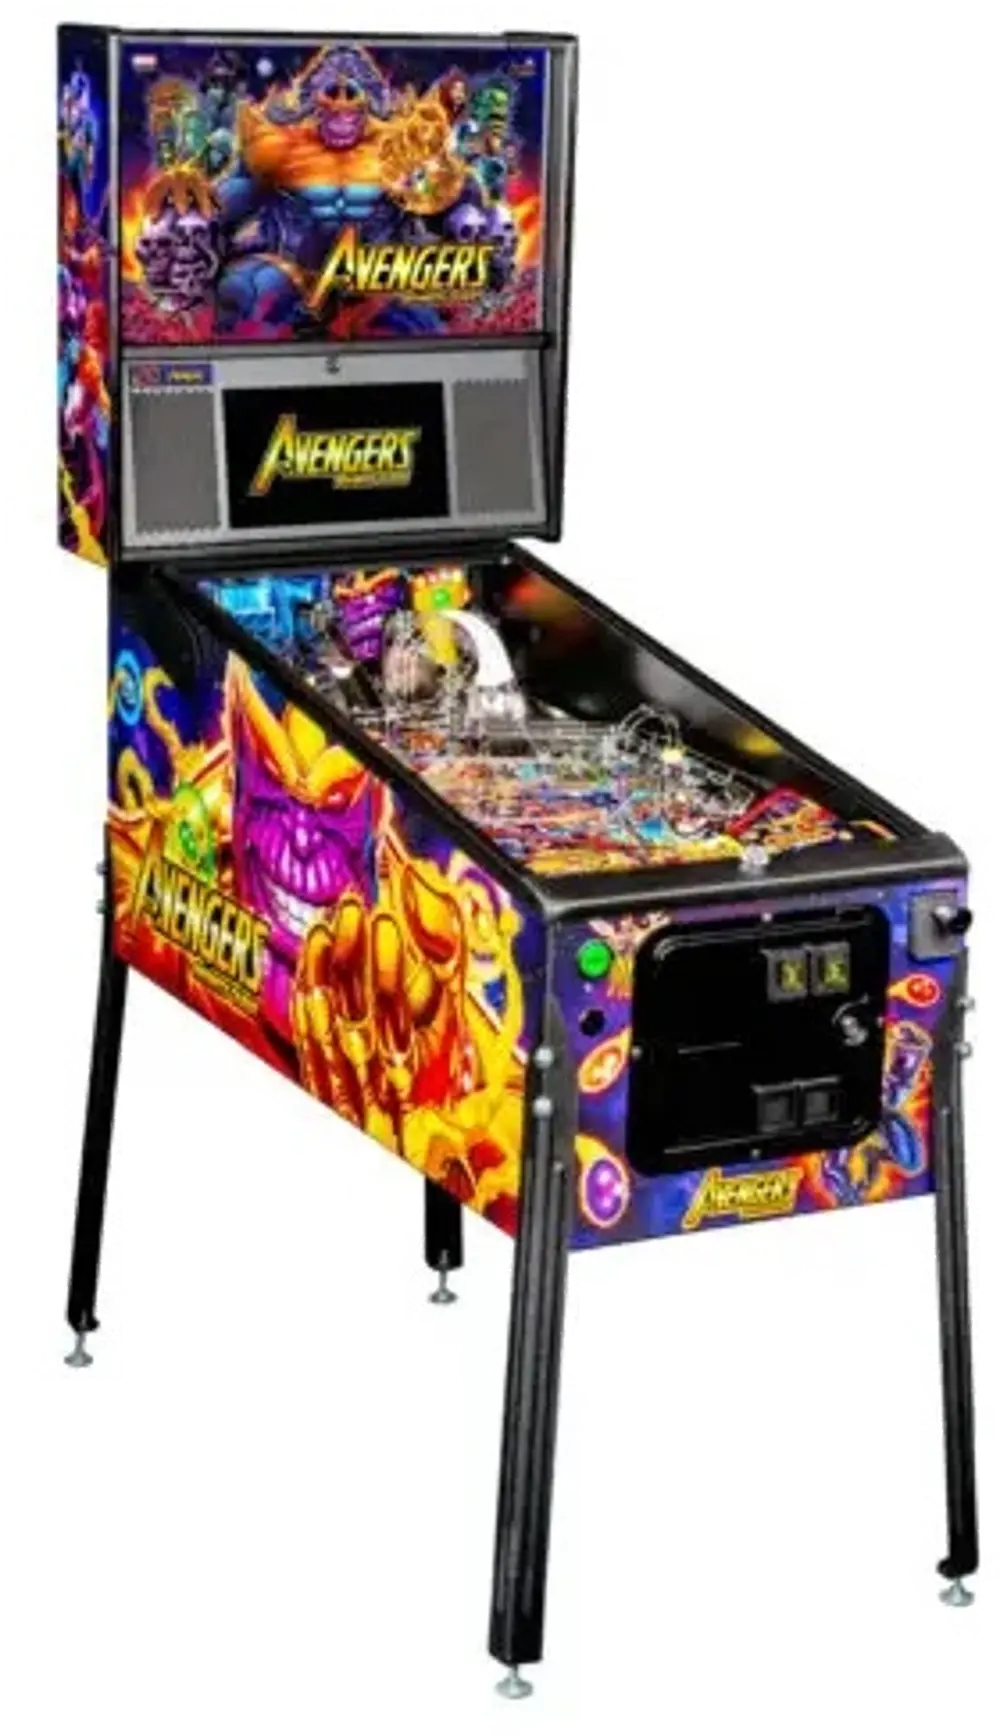 500-55R3-01 Stern Pinball Avengers Premium Pinball Machine-1